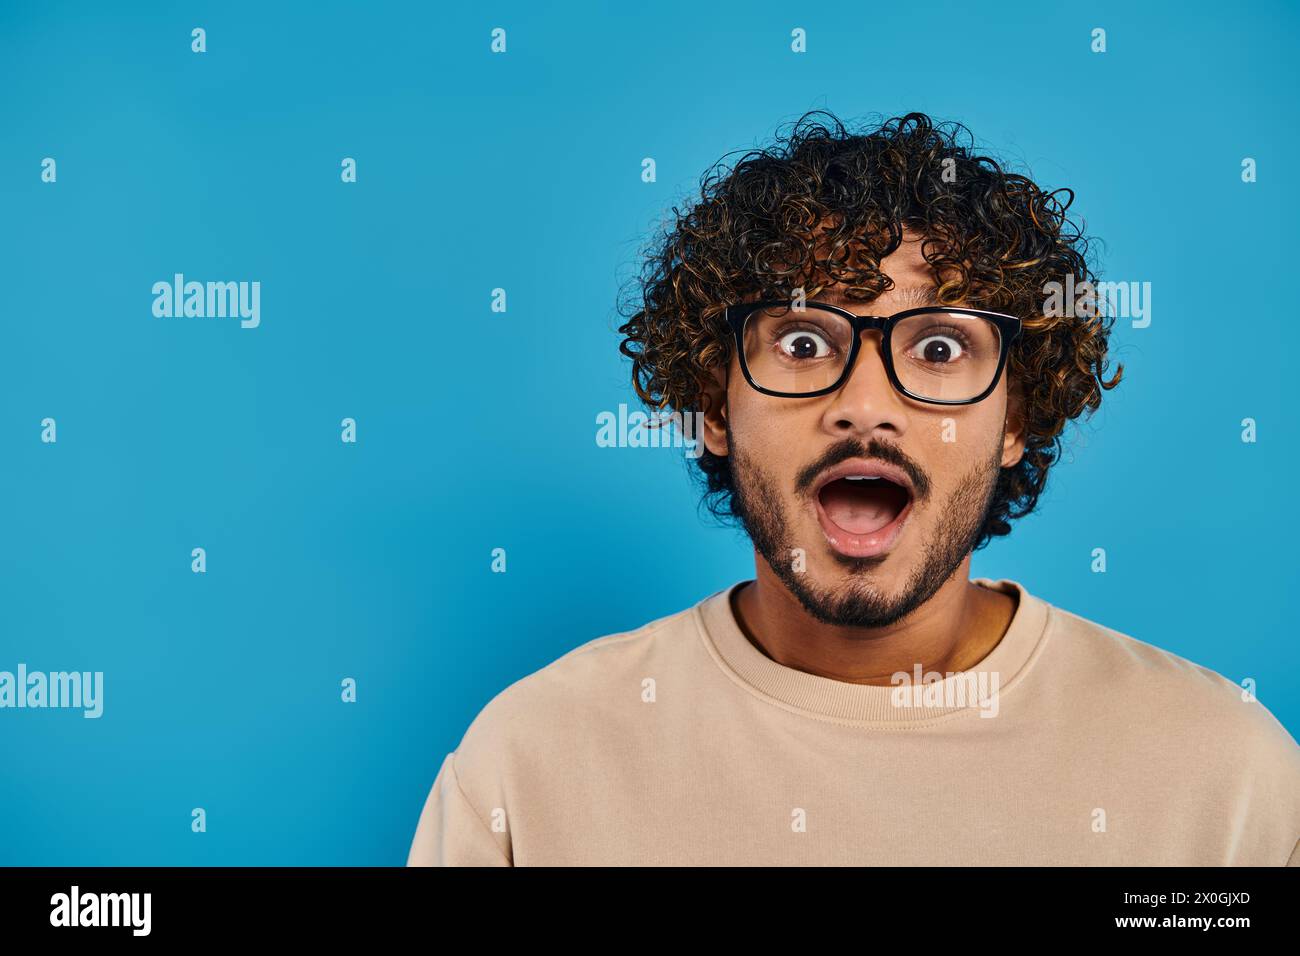 Ein indischer Student mit lockigem Haar und Brille sieht vor blauem Hintergrund überrascht aus. Stockfoto